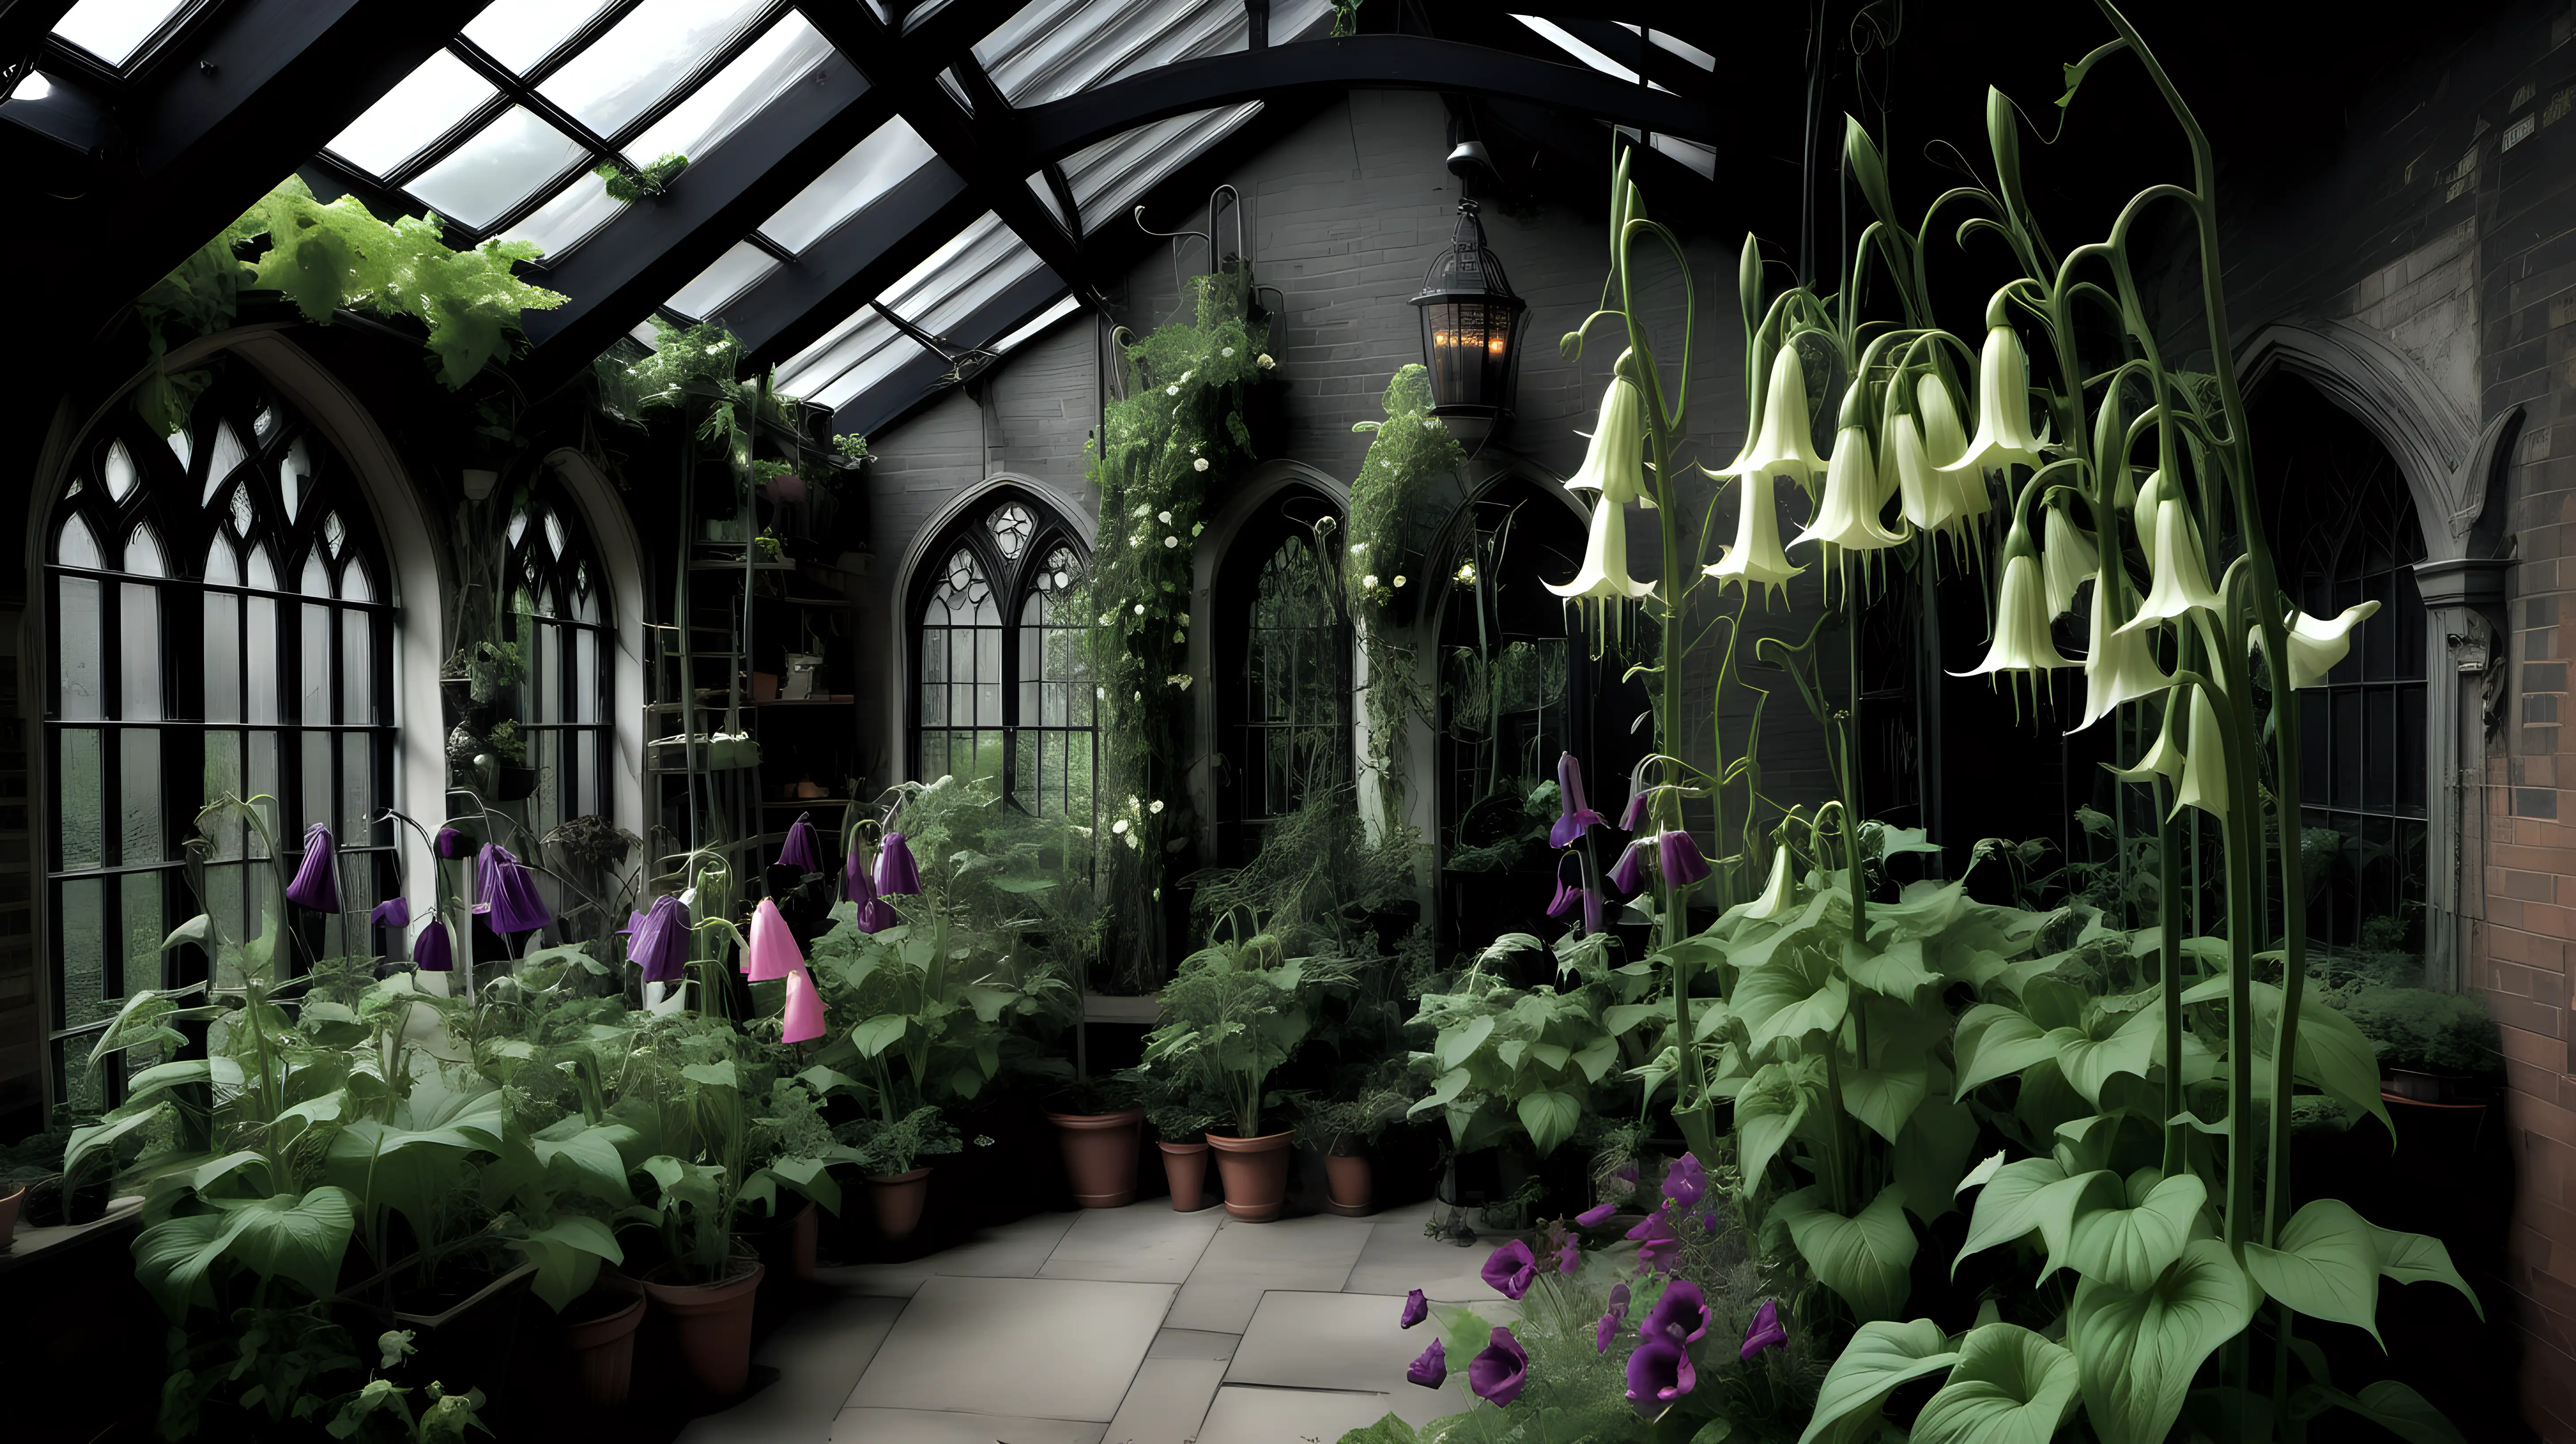 Enchanting Gothic Cottage Core Aesthetic Poisonous Plant Haven